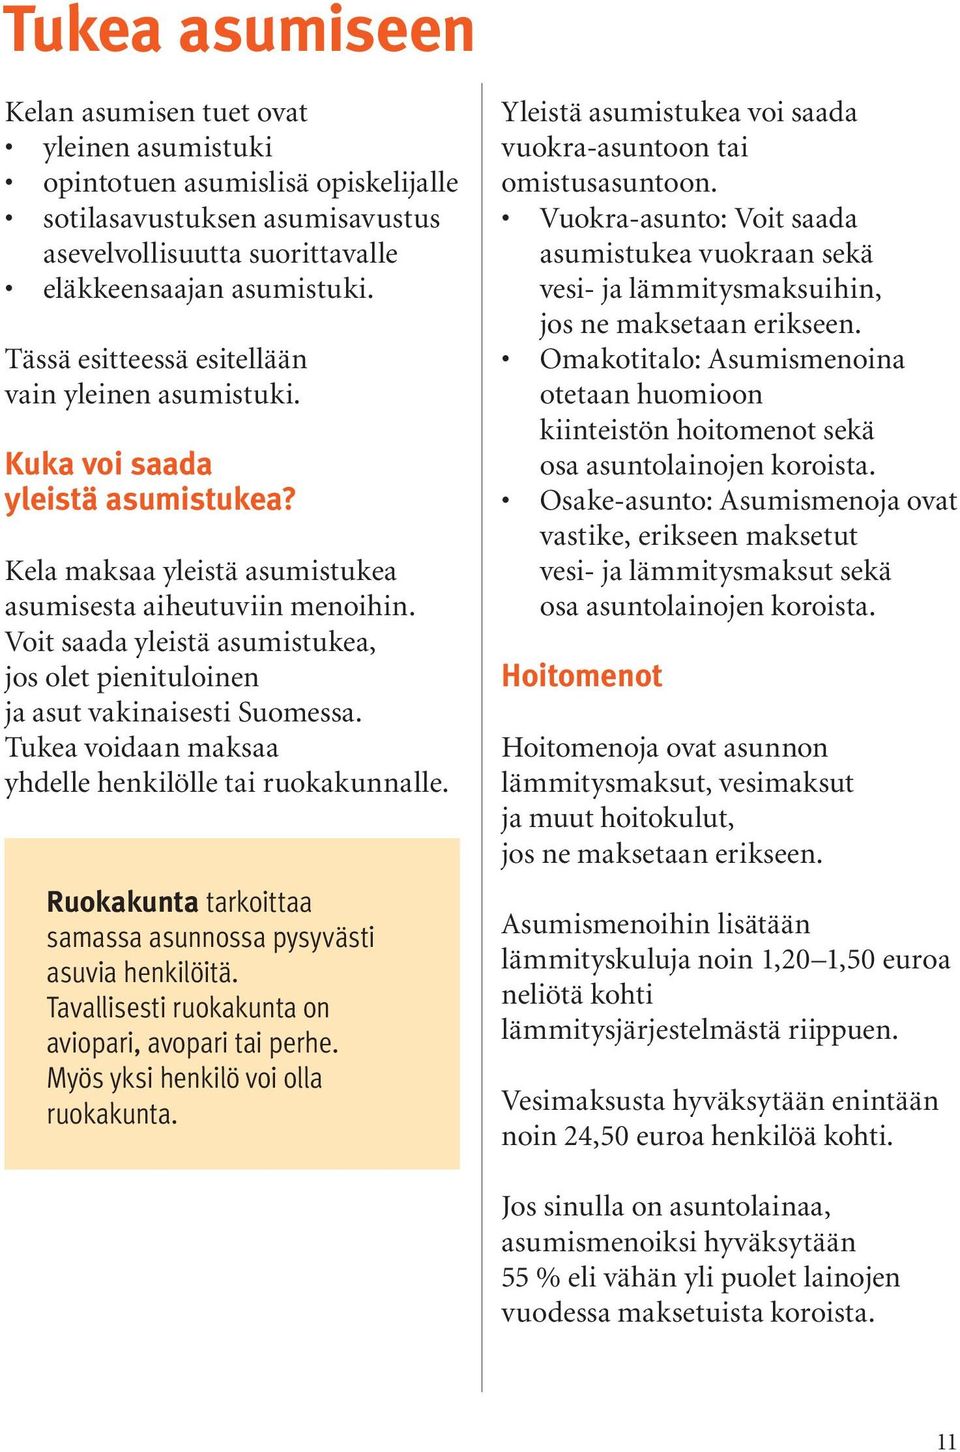 Voit saada yleistä asumistukea, jos olet pienituloinen ja asut vakinaisesti Suomessa. Tukea voidaan maksaa yhdelle henkilölle tai ruokakunnalle.